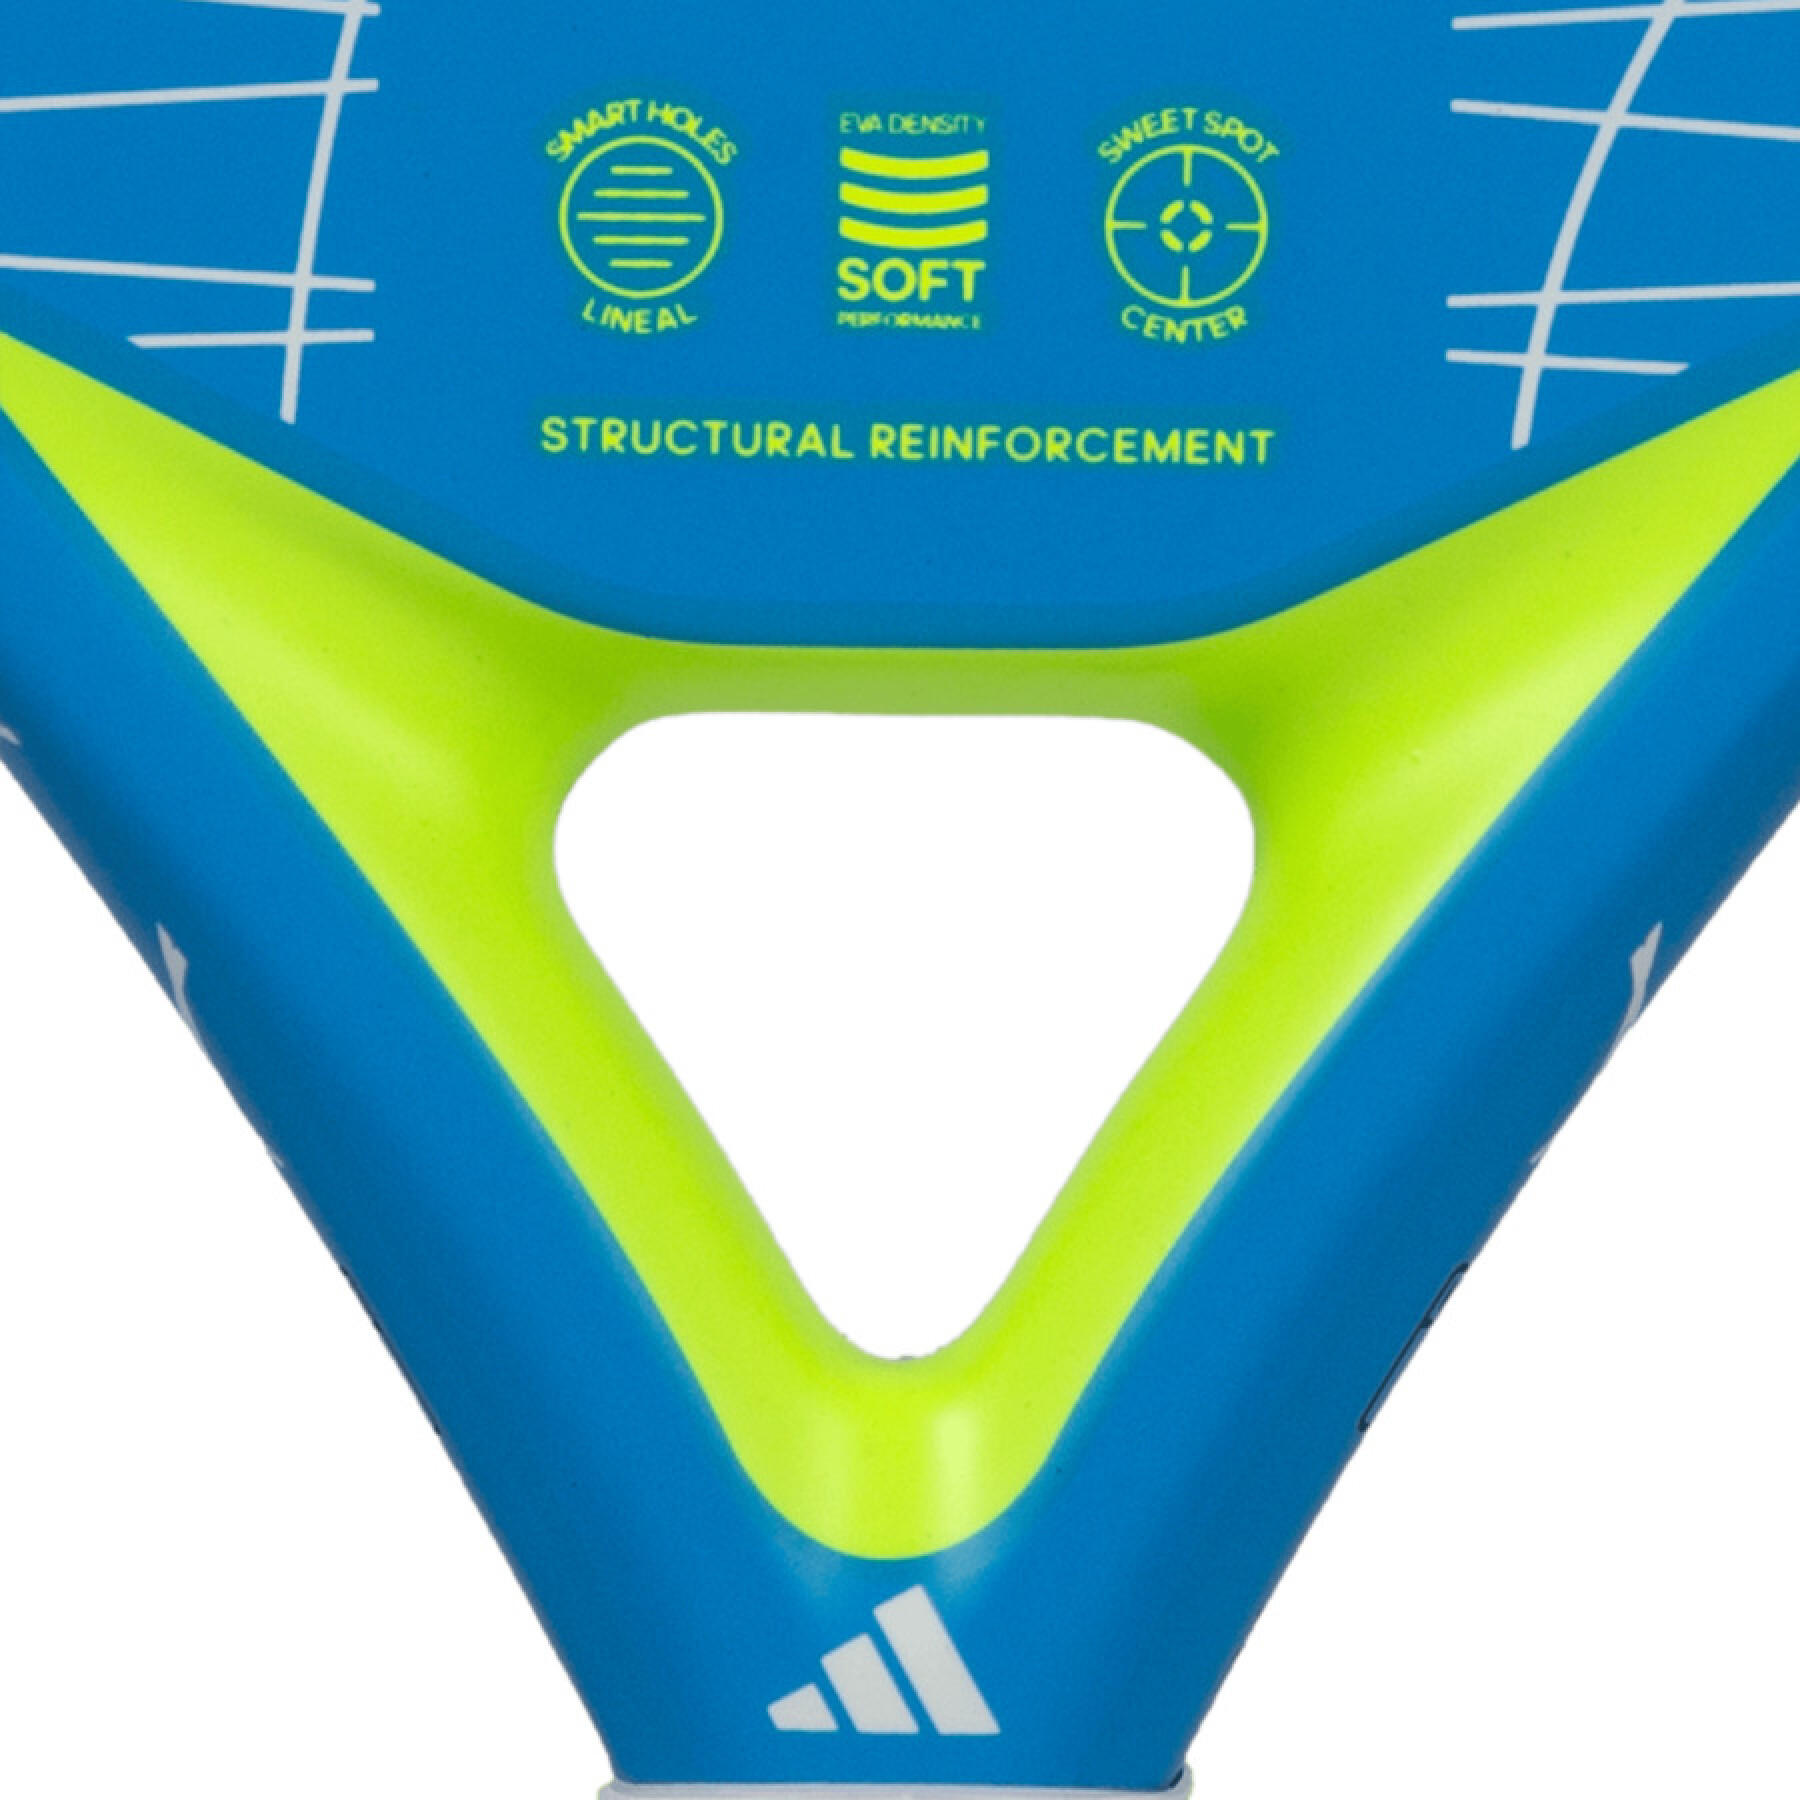 Padel rackets adidas Drive 3.3